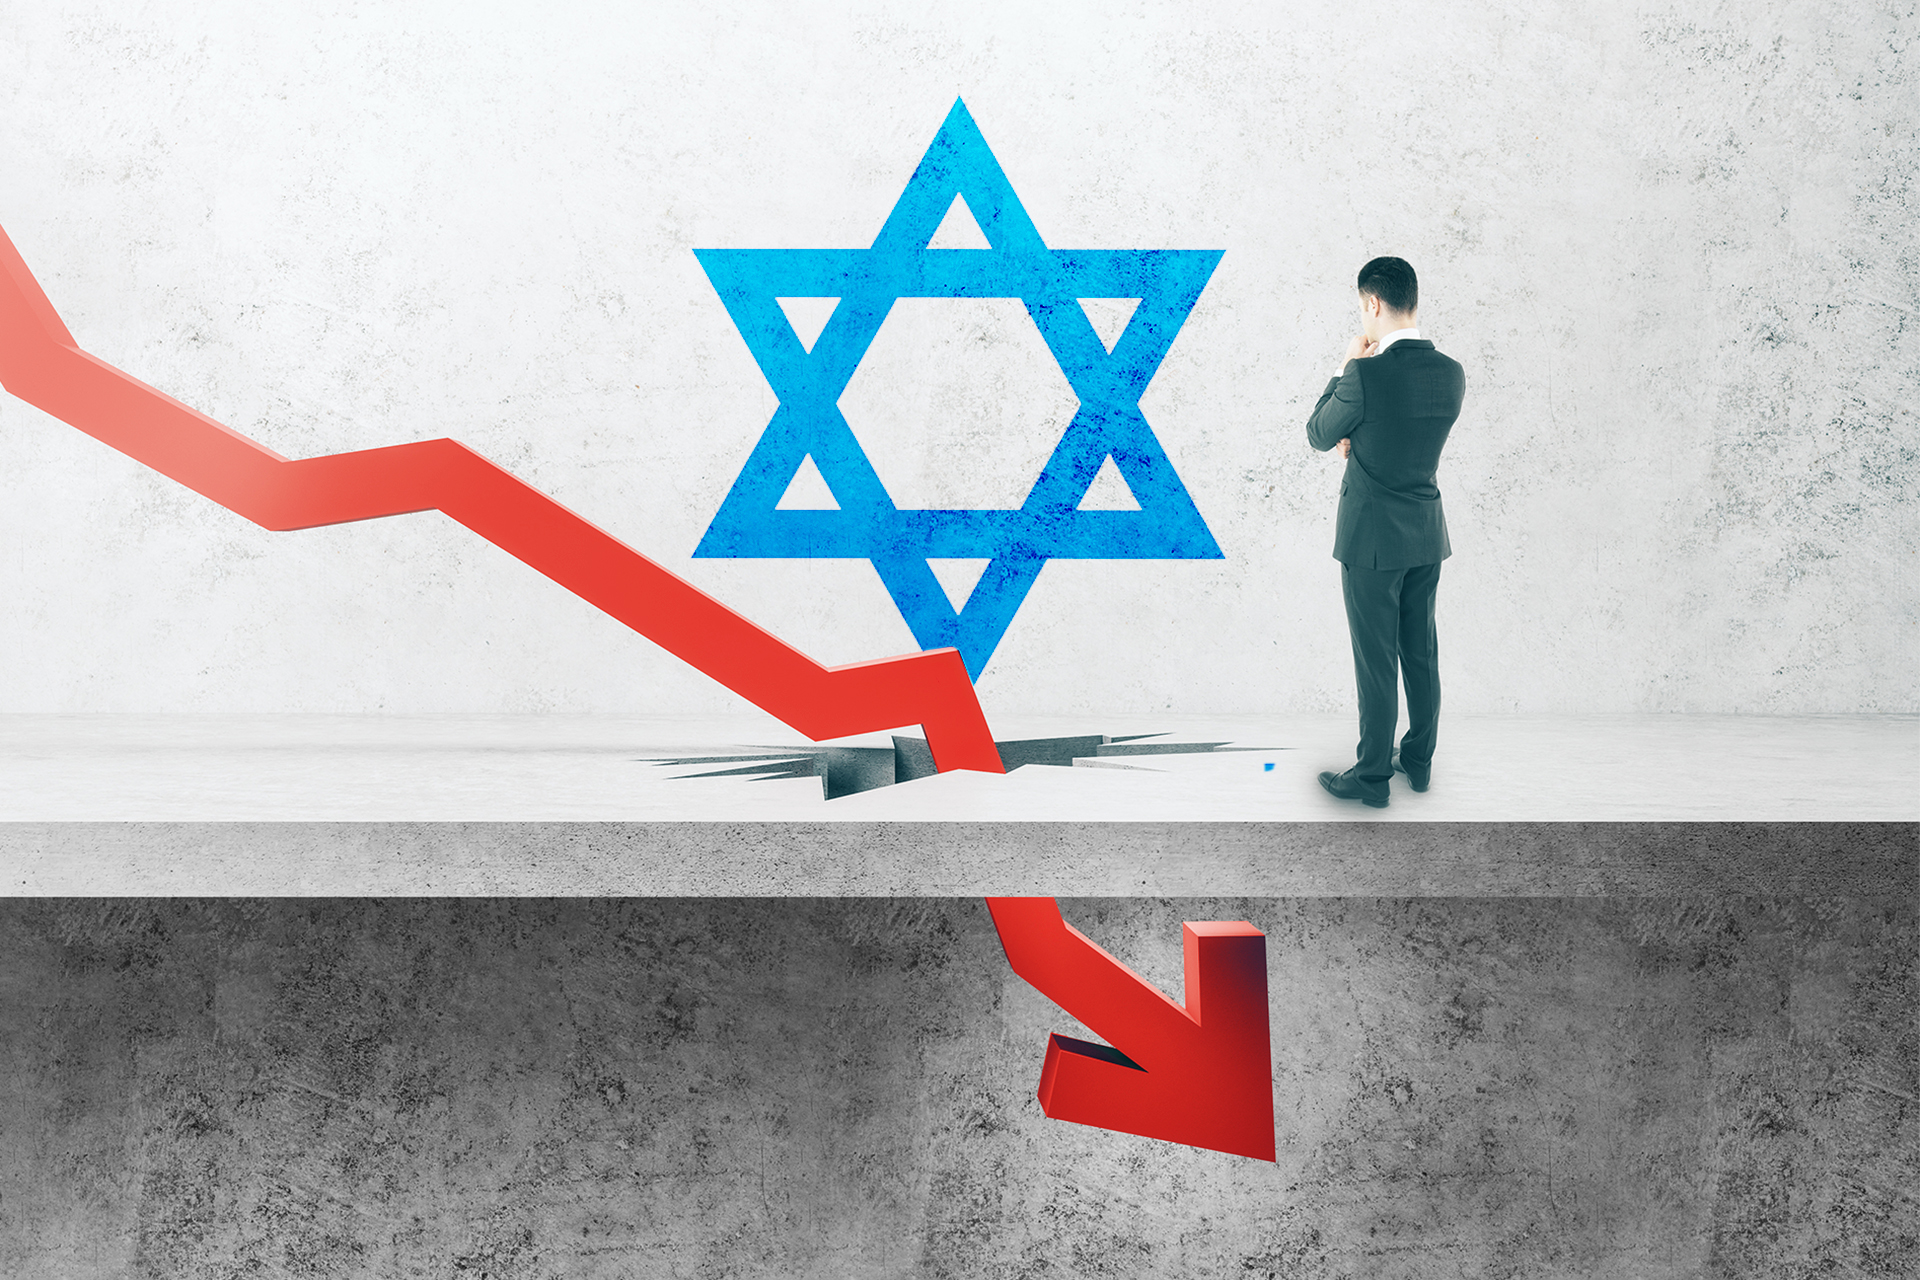 إسرائيل جمعت 2.7 مليار دولار من بيع سندات معظمها لأميركا | اقتصاد – البوكس نيوز